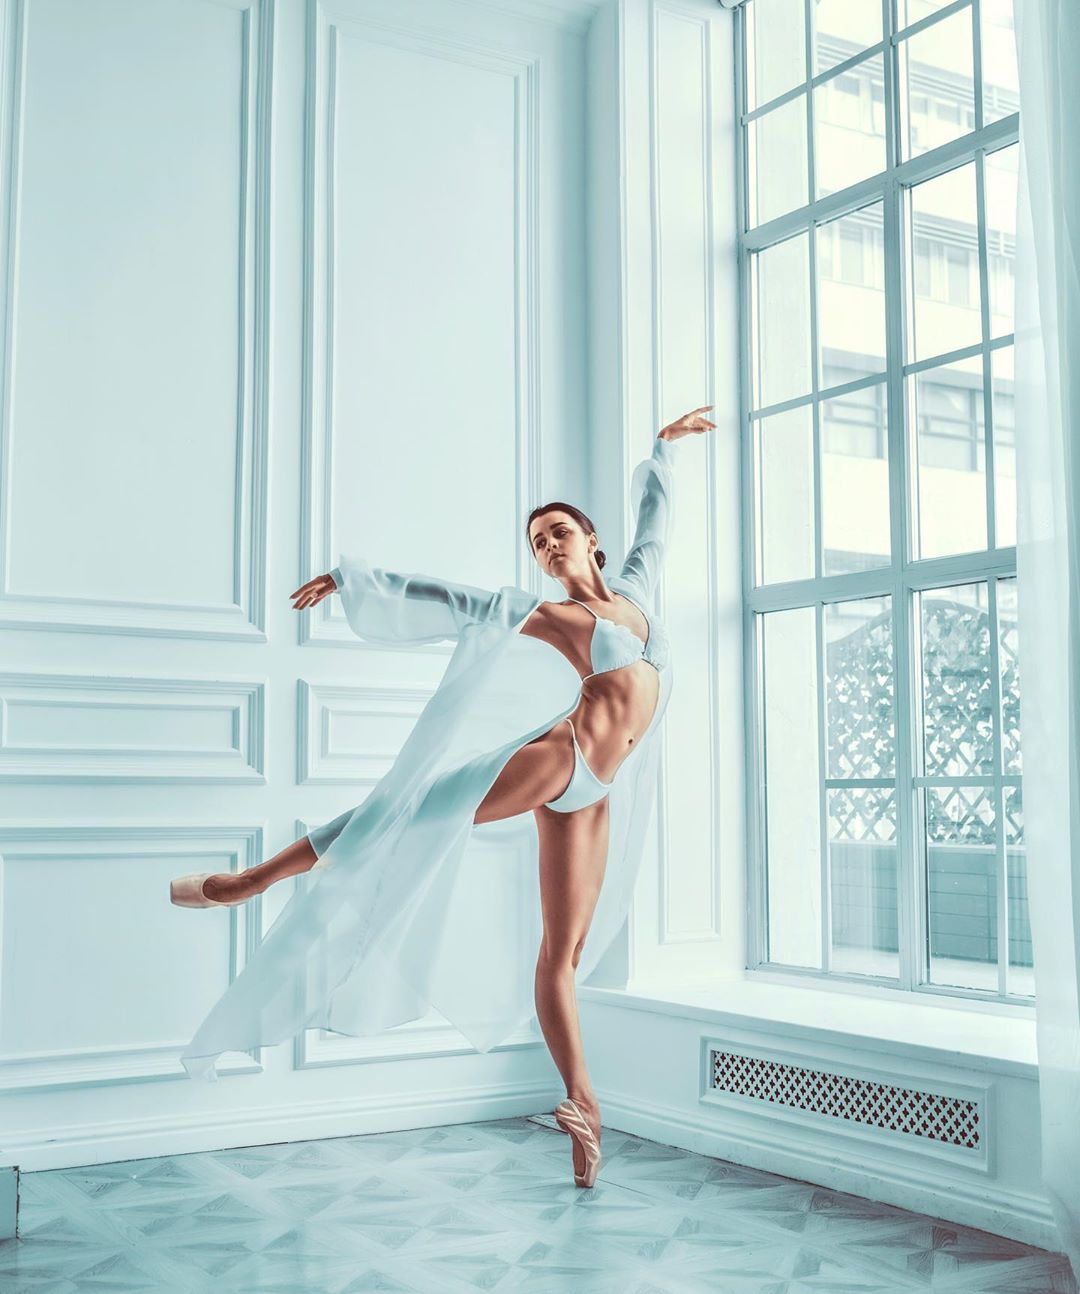 Красивые балерины на снимках Левенте Сабо Левенте, фотографии, появилась, впервые, снимках, балерины, Красивые, httpswwwinstagramcomlevente_phЗапись, подписчиков123456789101112131415161718192021222324252627282930Источник, более, Instagram, делится, работами, Своими, балетной, Levente, портретной, основном, специализируется, Россия